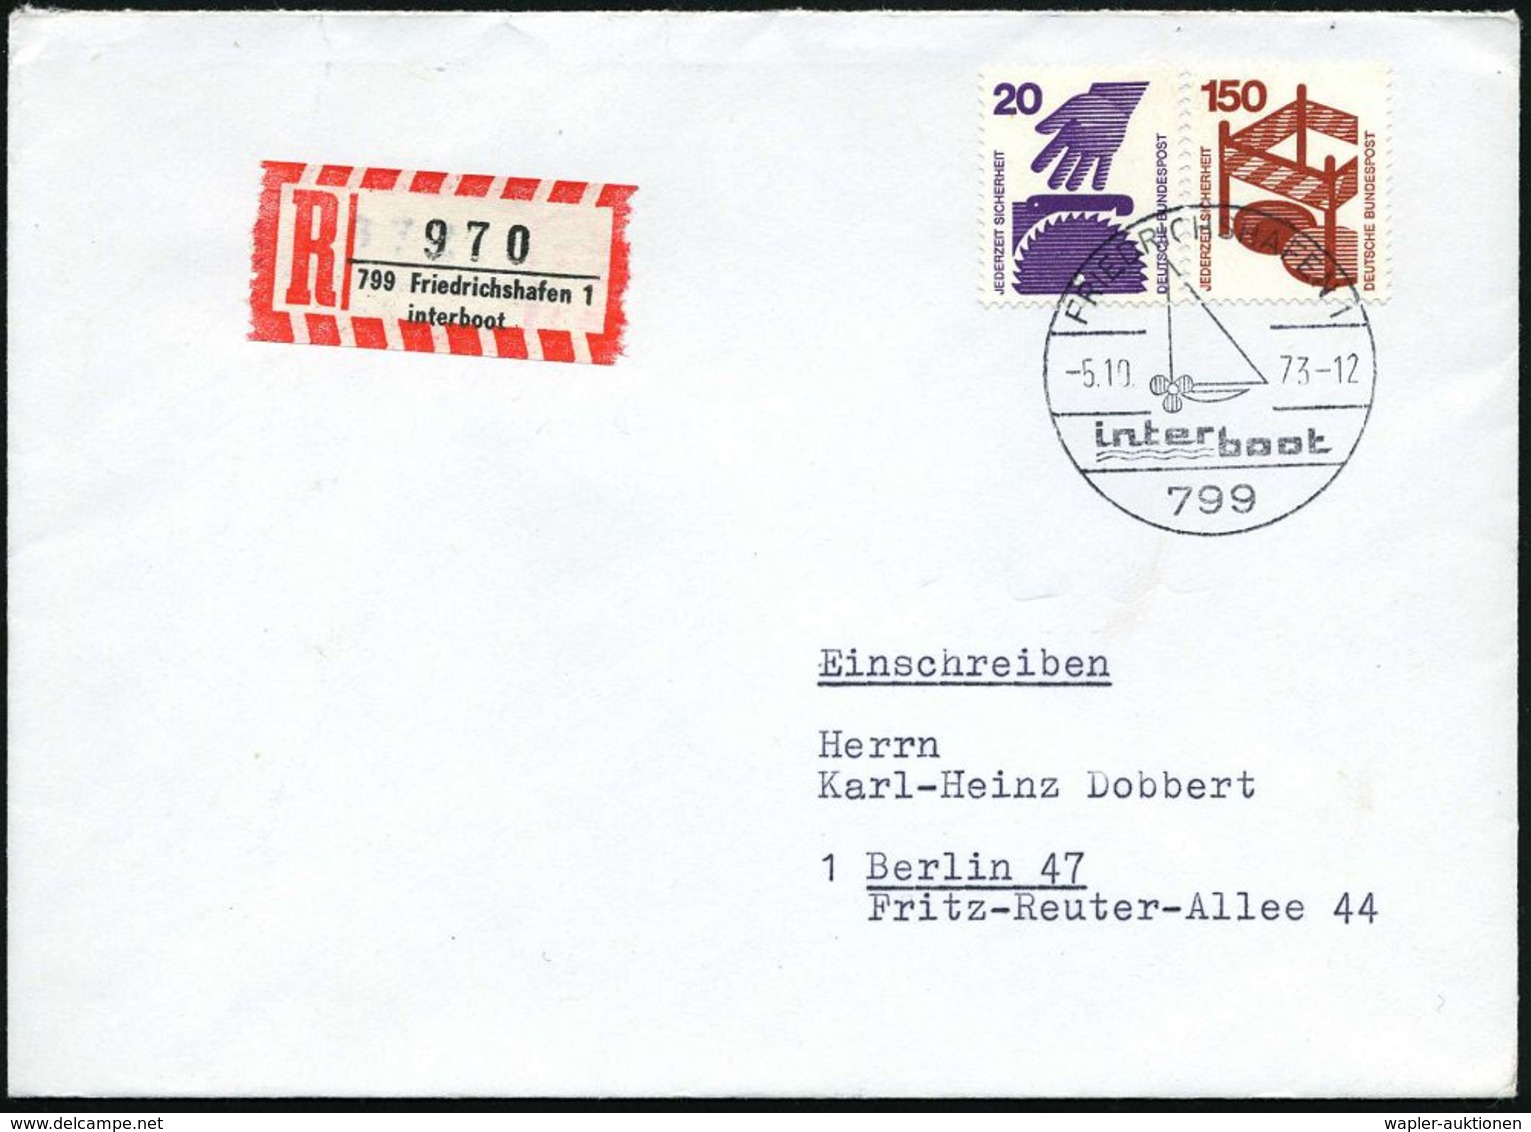 799 FRIEDRICHSHAFEN 1/ Inter/ Boot 1973 (5.10.) SSt + Sonder-RZ: 799 Friedrichshafen 1/interboot (NEZ-Nr.58, IV.Aufl.) S - Maritime